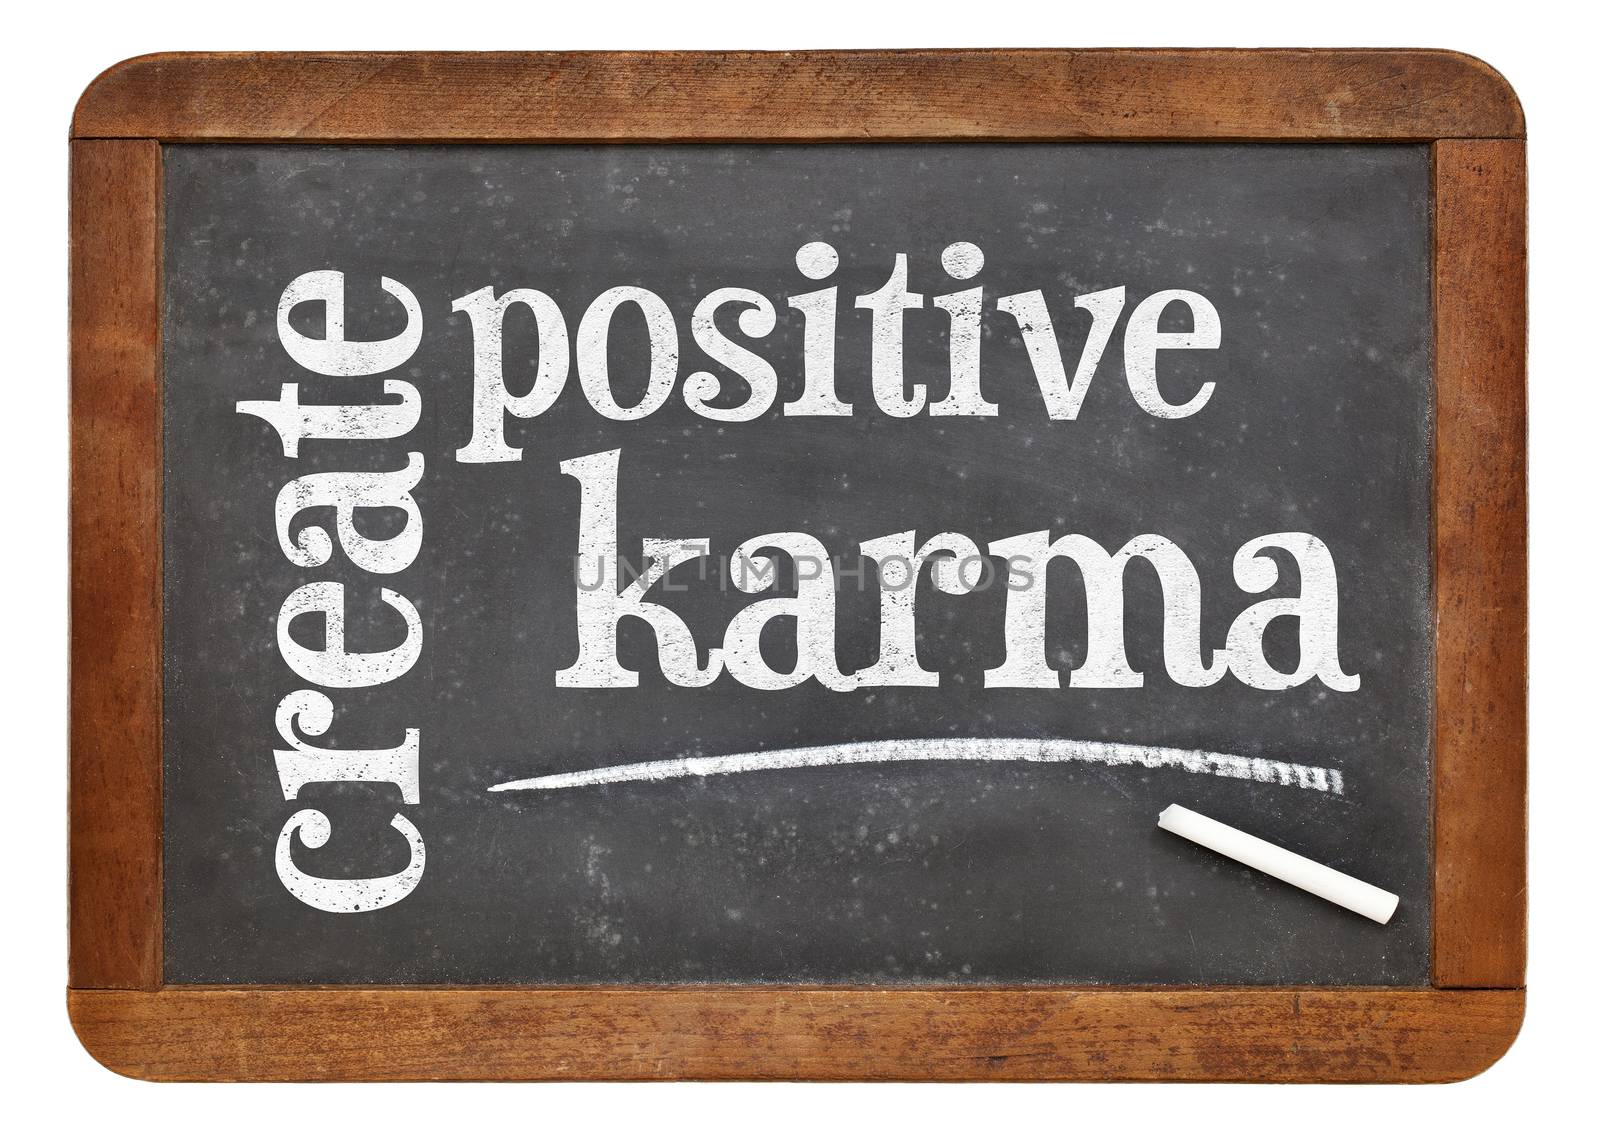 create positive karma - text on blackboard by PixelsAway